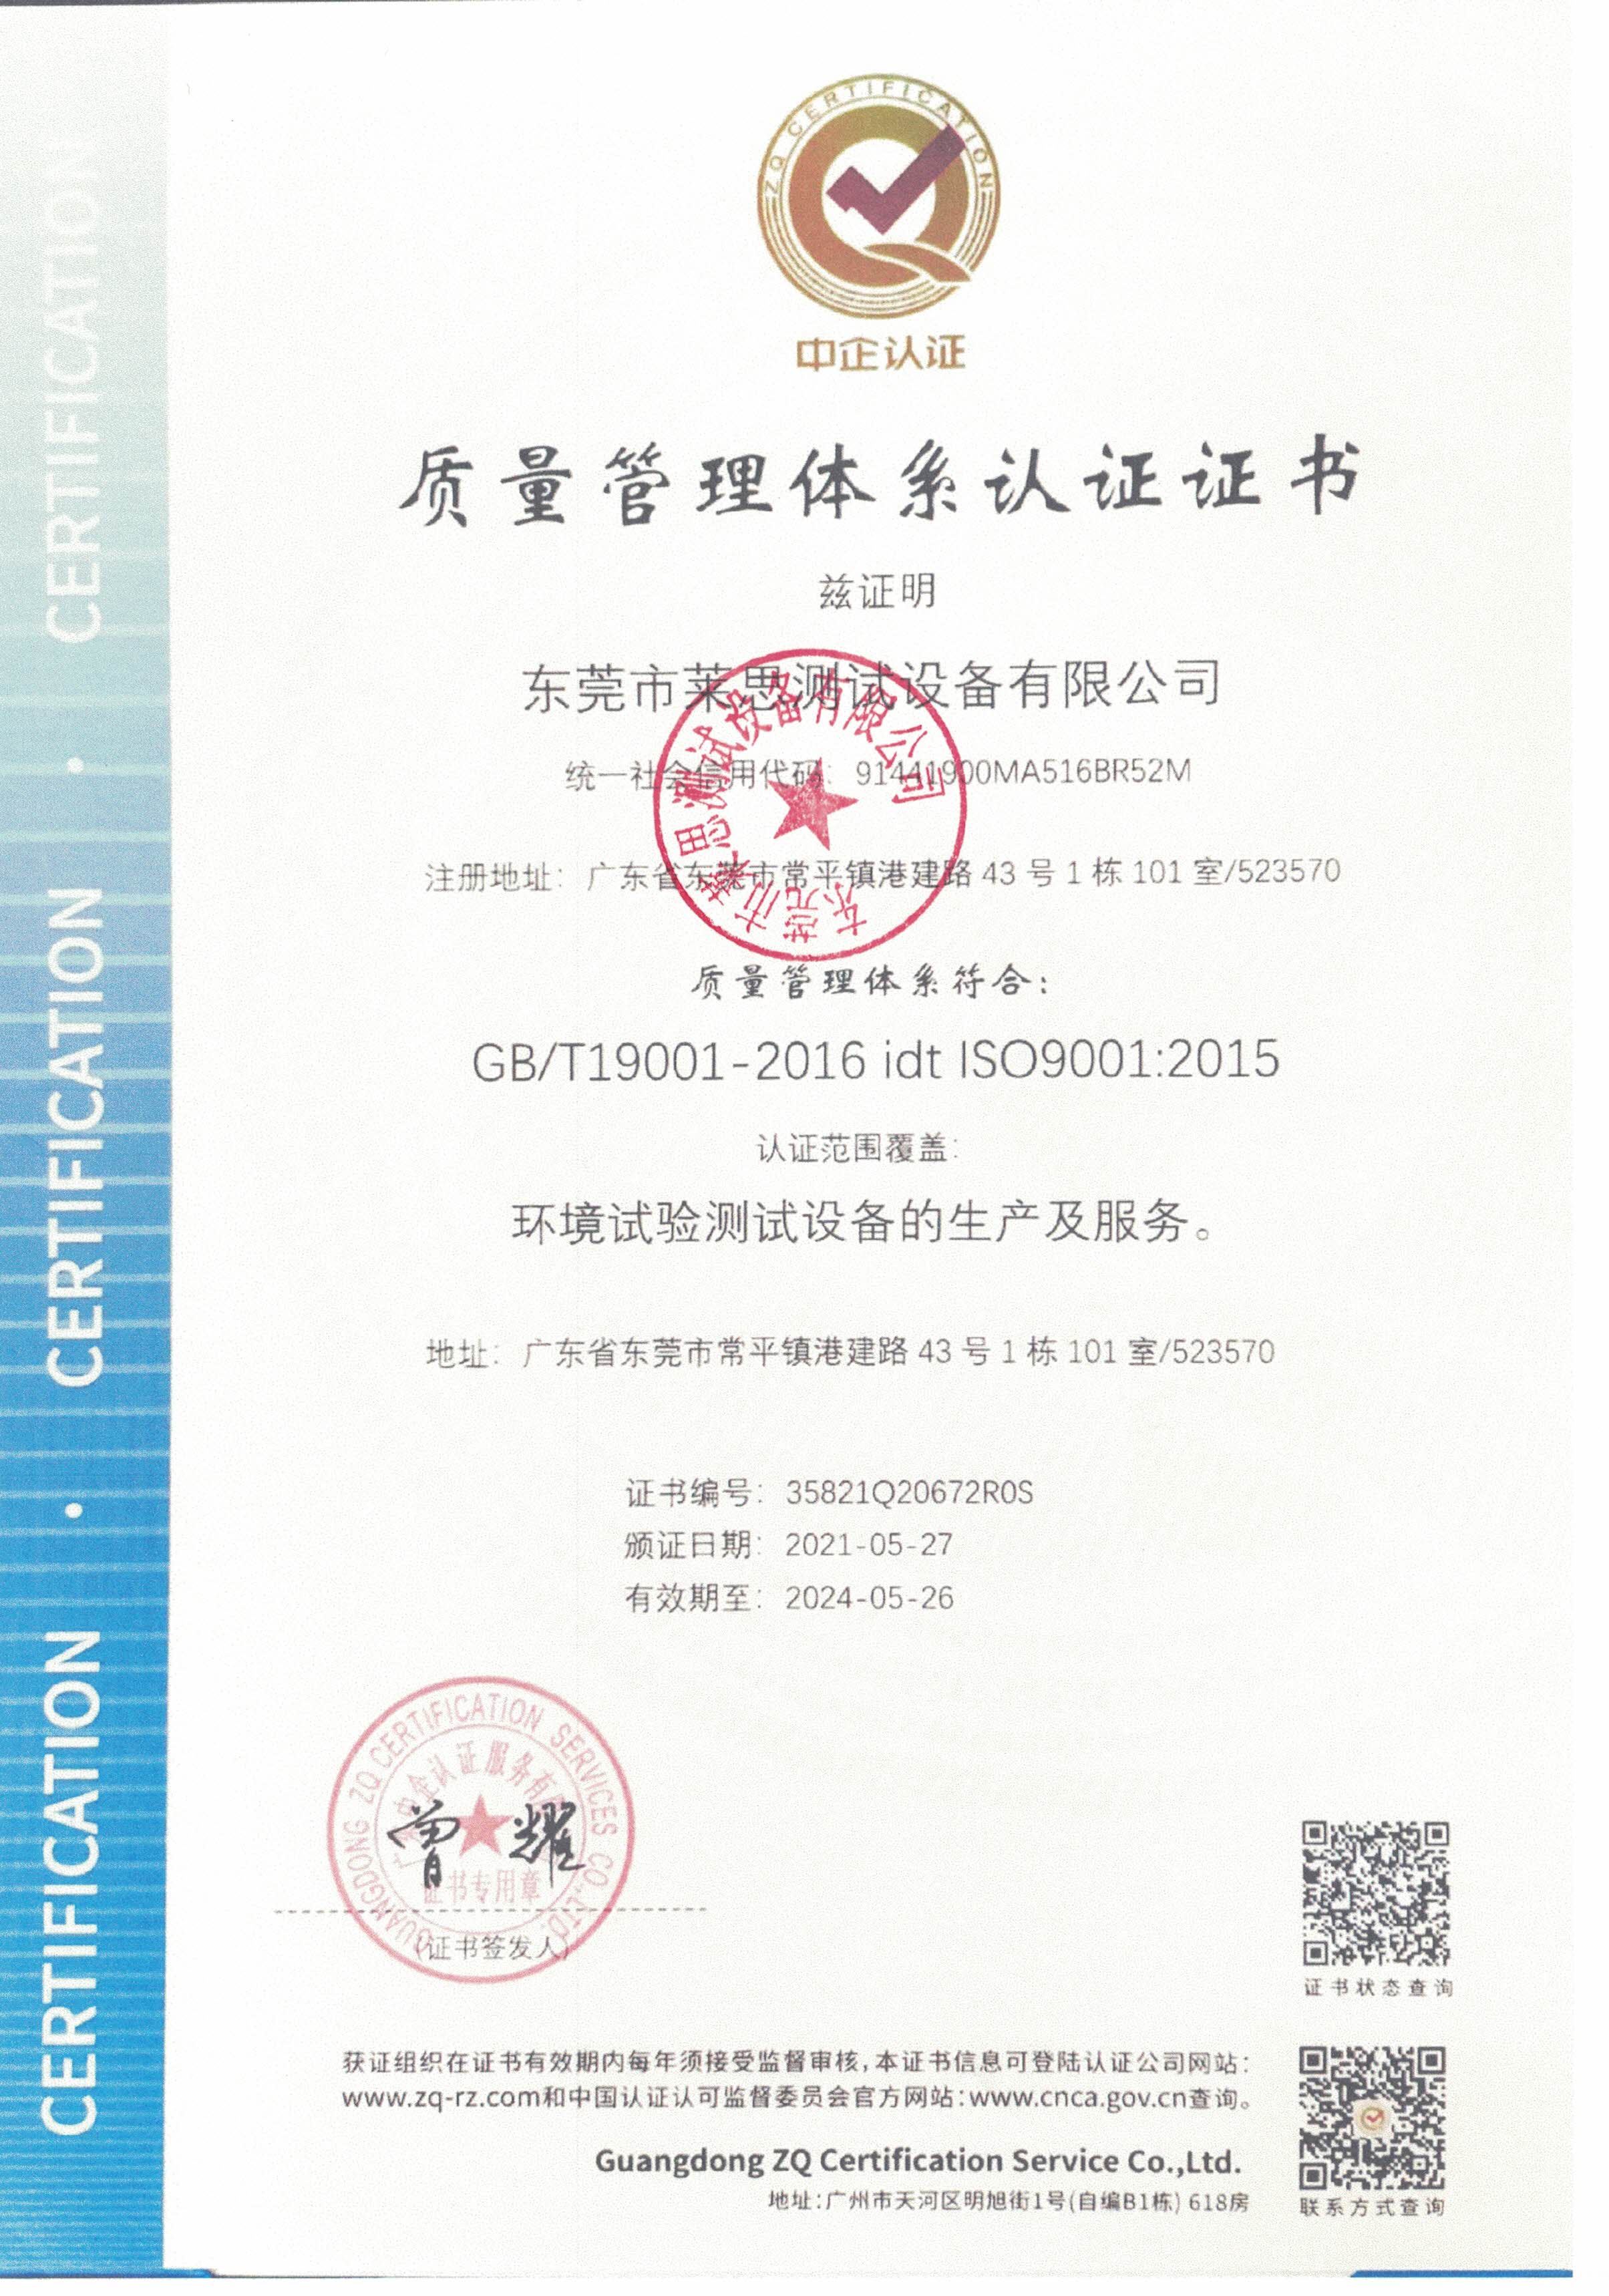  东莞莱思测试通过ISO9001质量管理体系认证